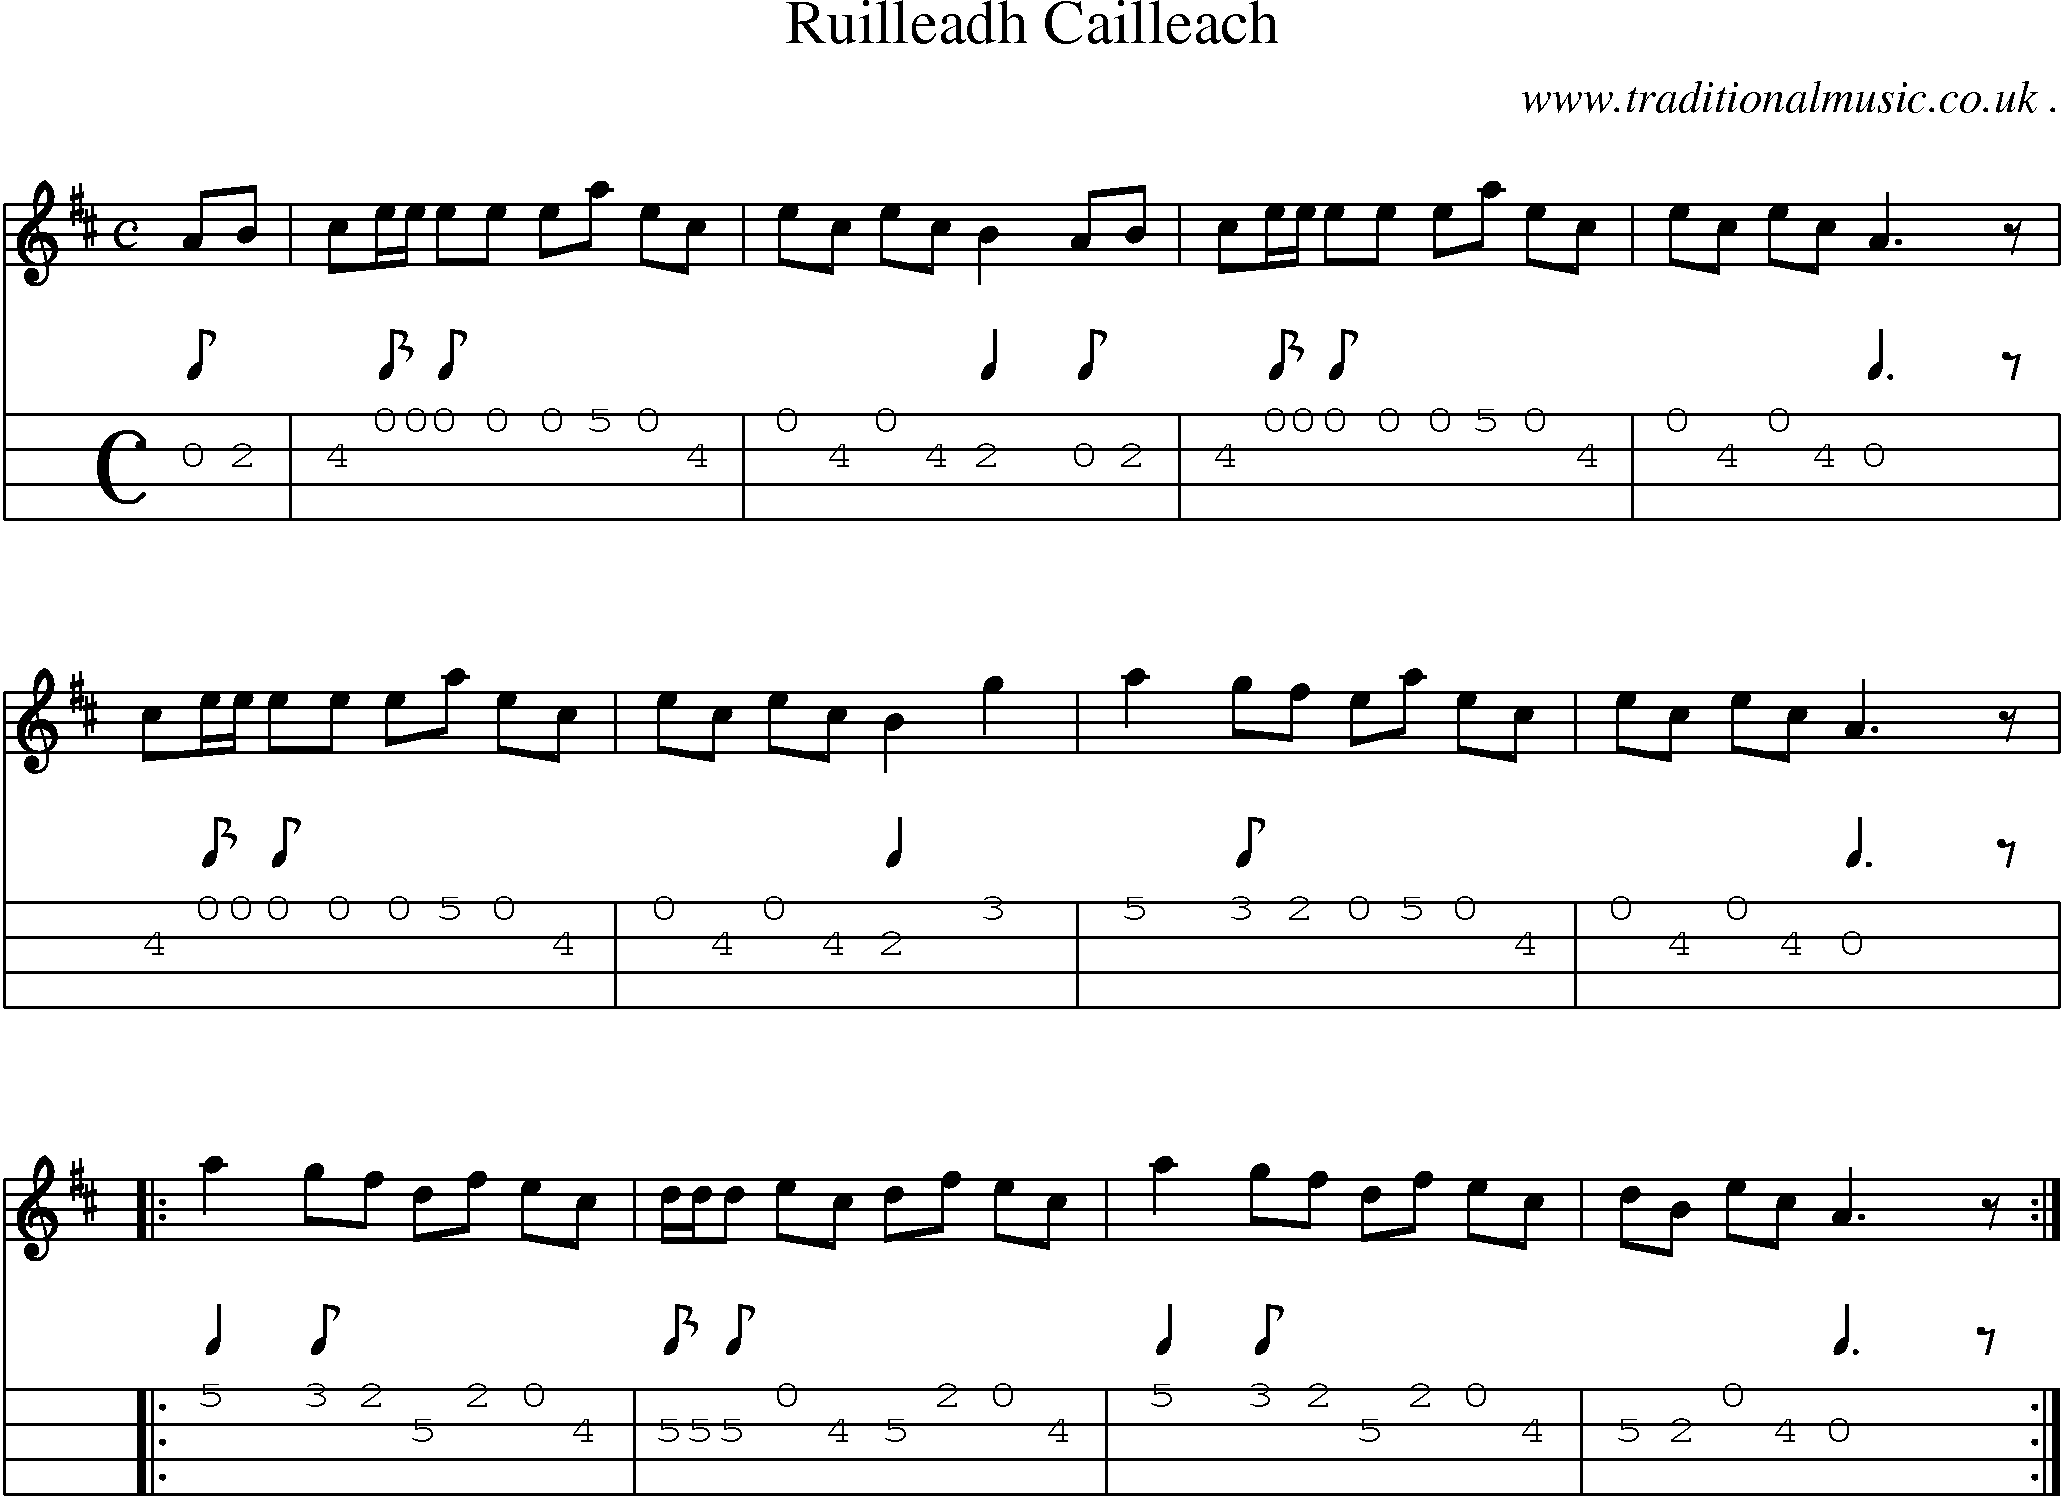 Sheet-Music and Mandolin Tabs for Ruilleadh Cailleach